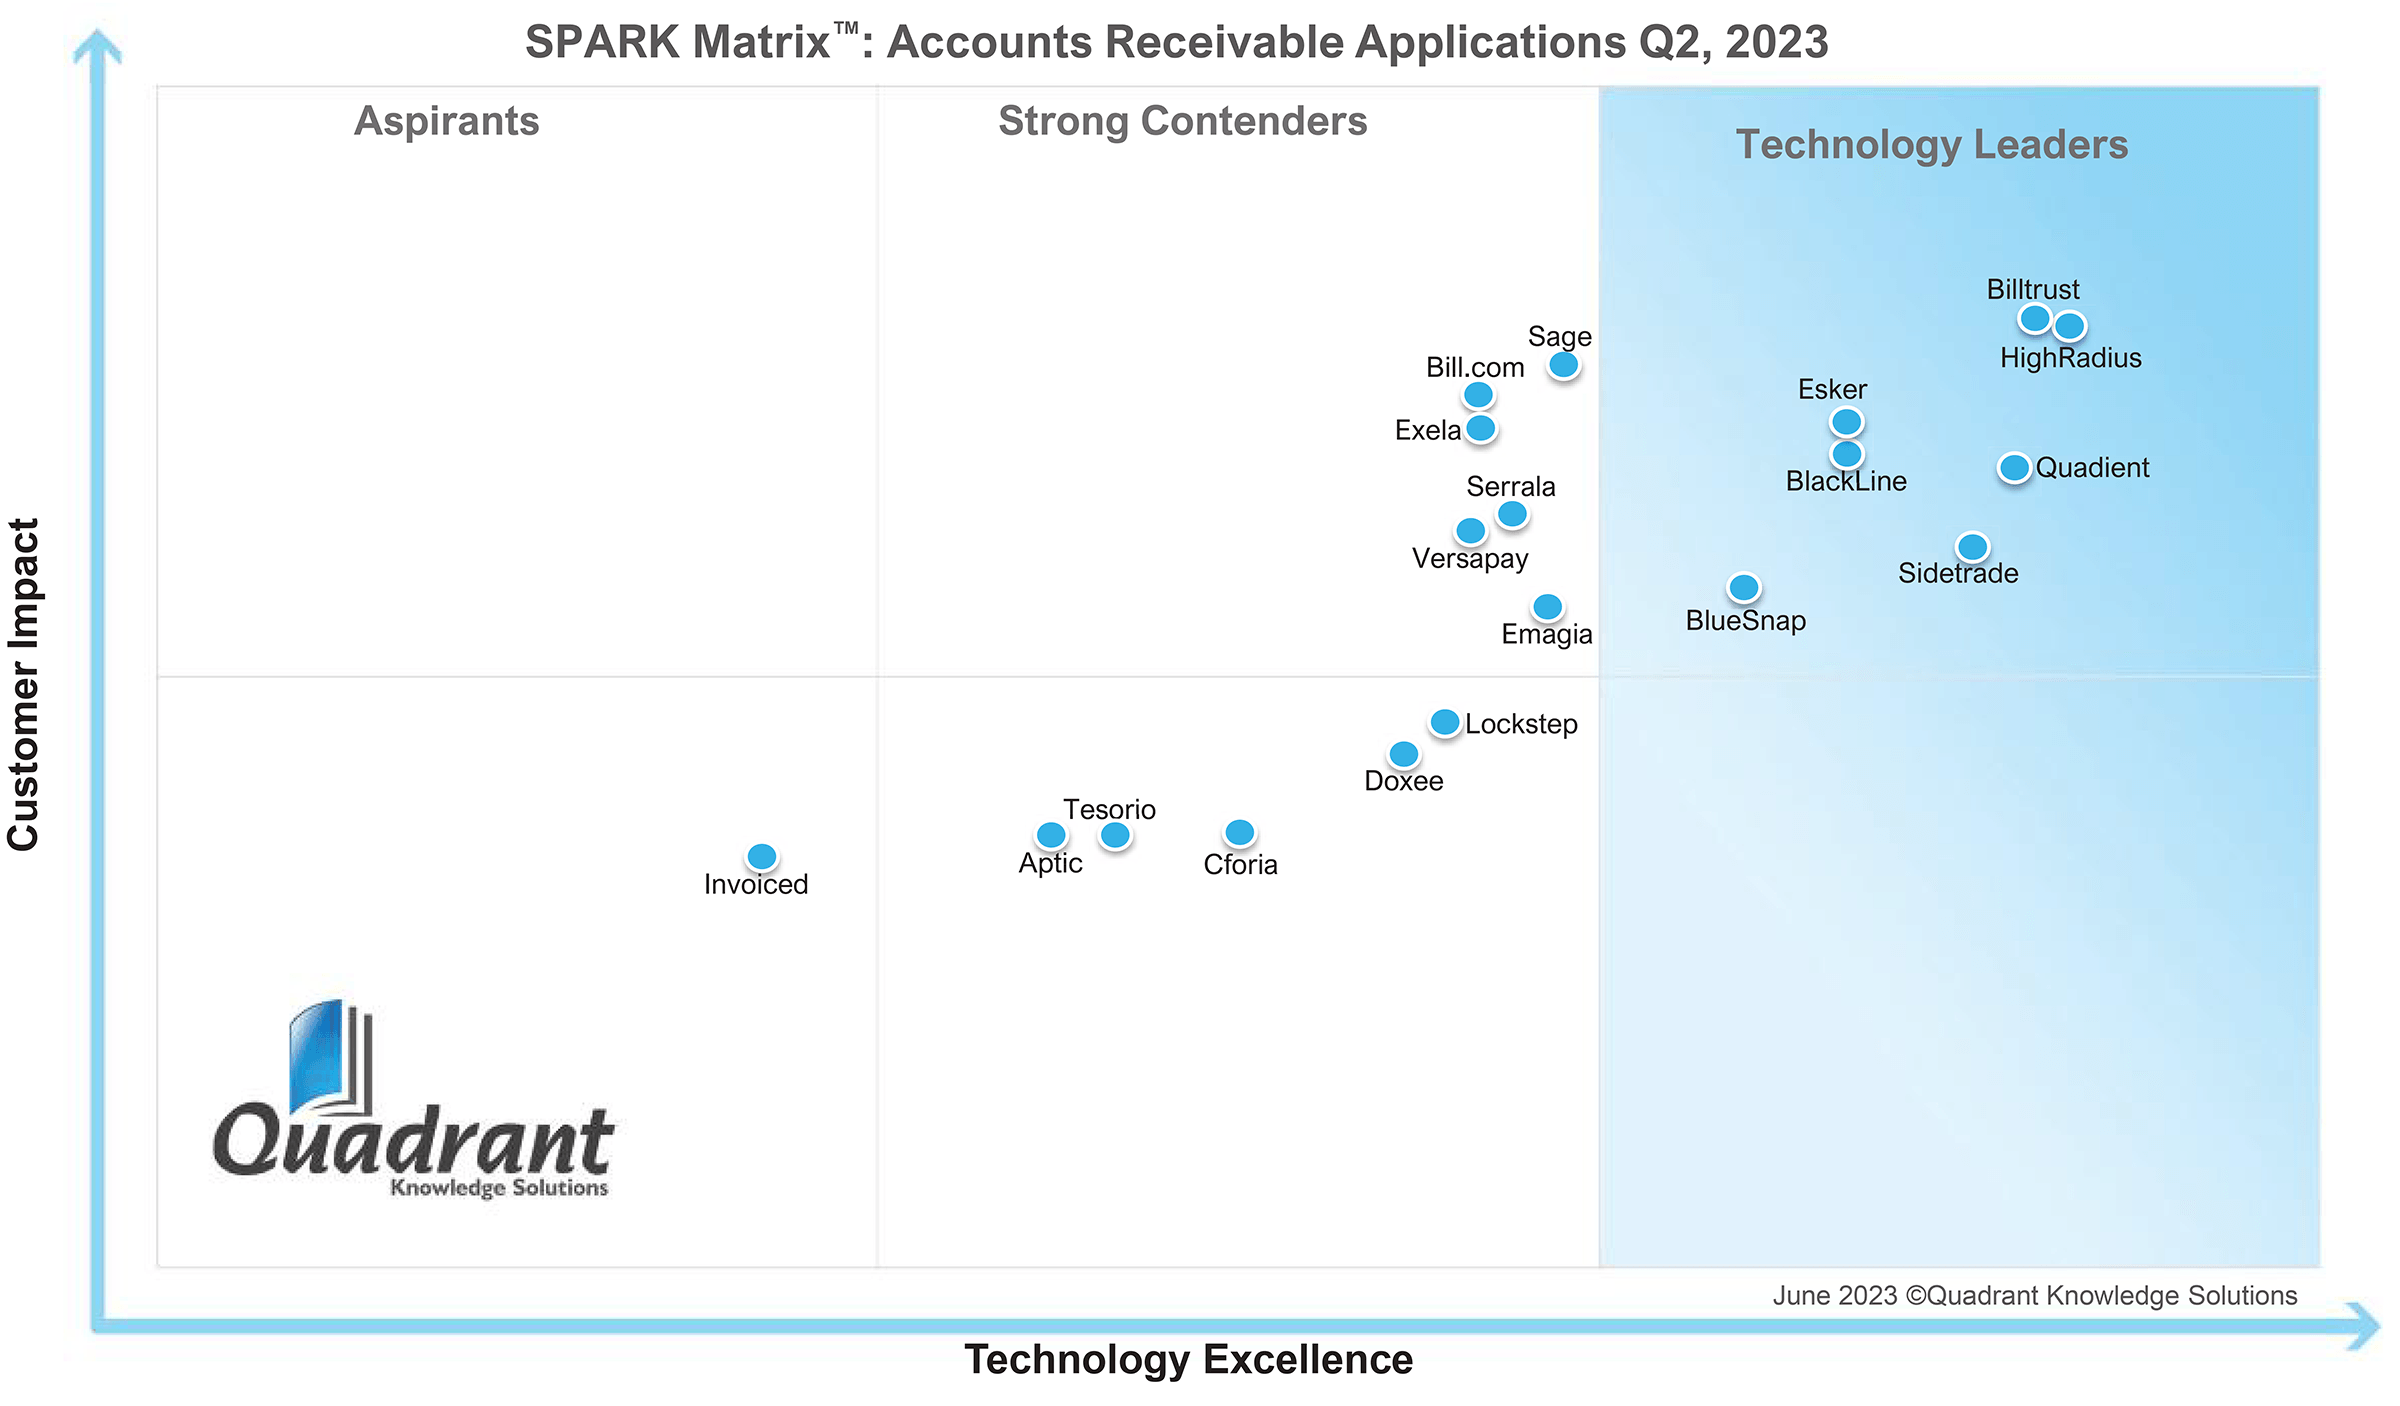 Spark Matrix: Accounts Receivables Application Q2 2023 matrix